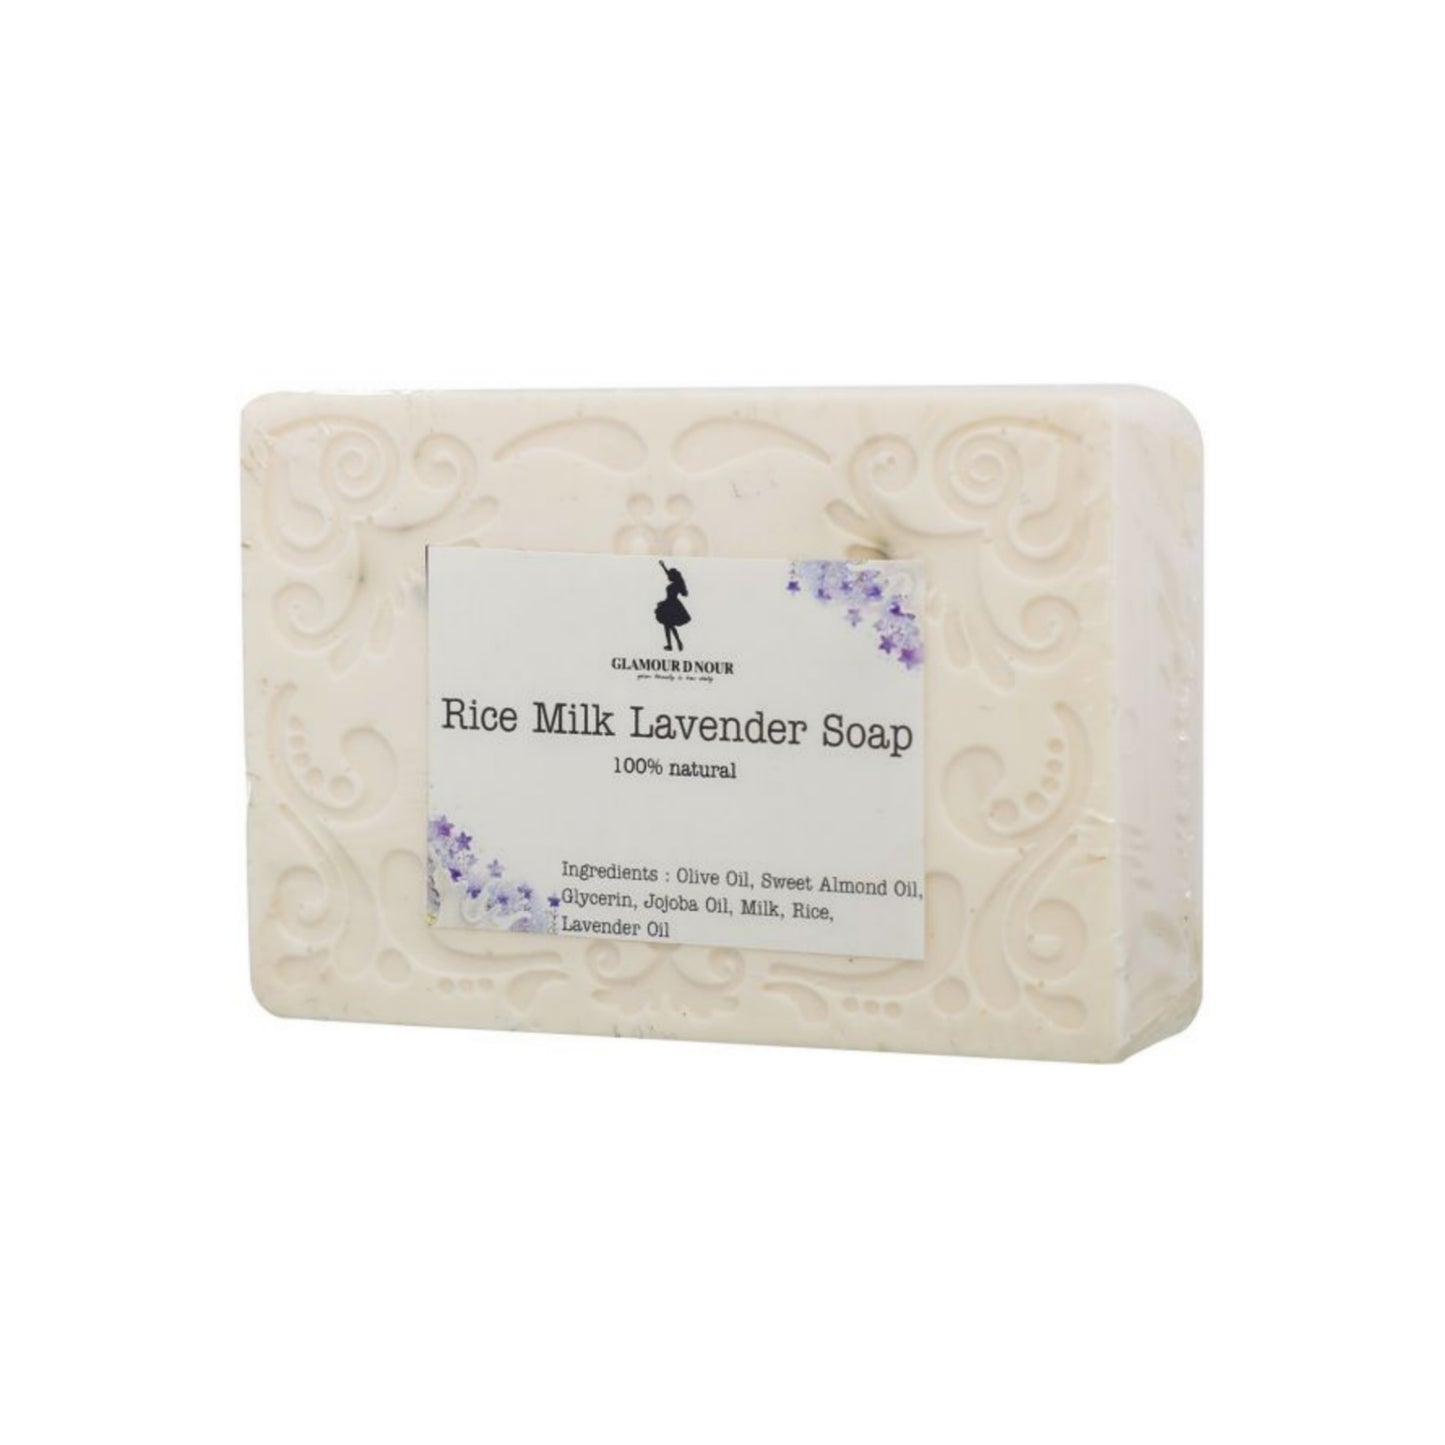 Rice Milk Lavender Soap